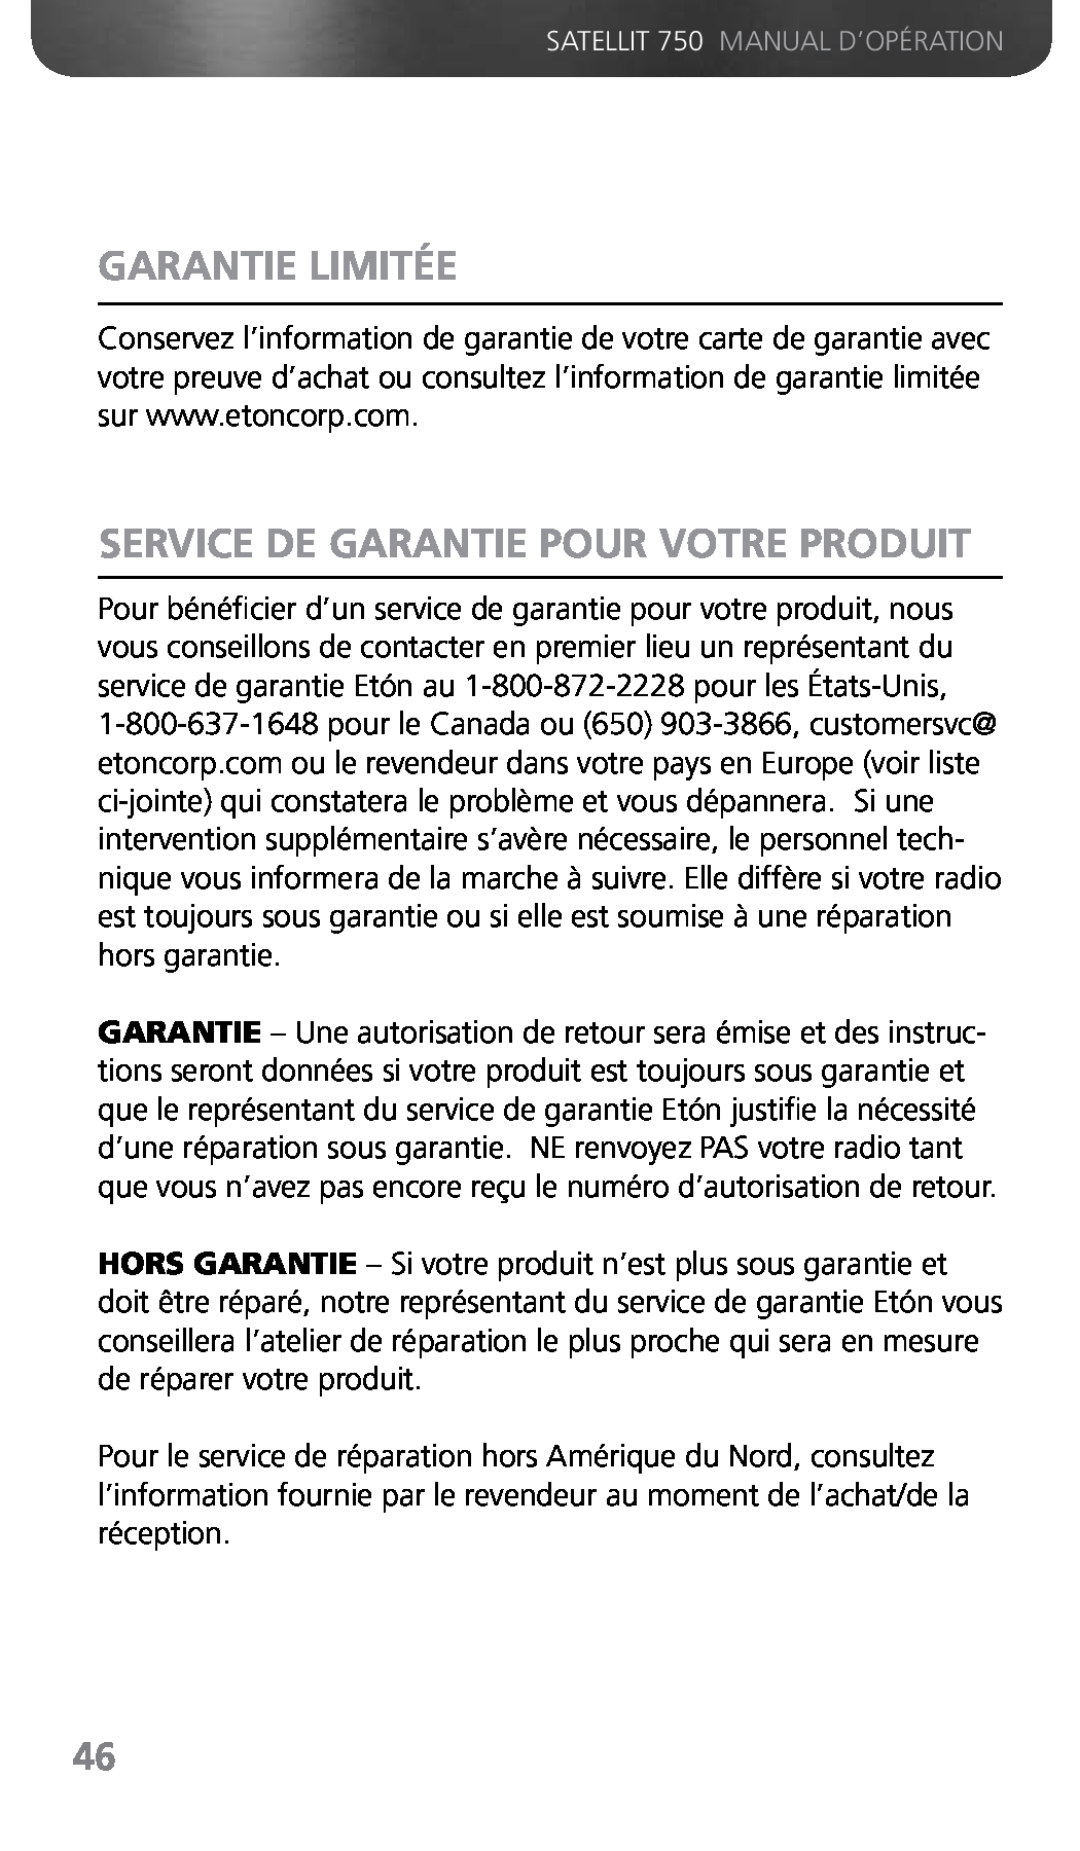 Grundig 750 owner manual Garantie Limitée, Service De Garantie Pour Votre Produit 